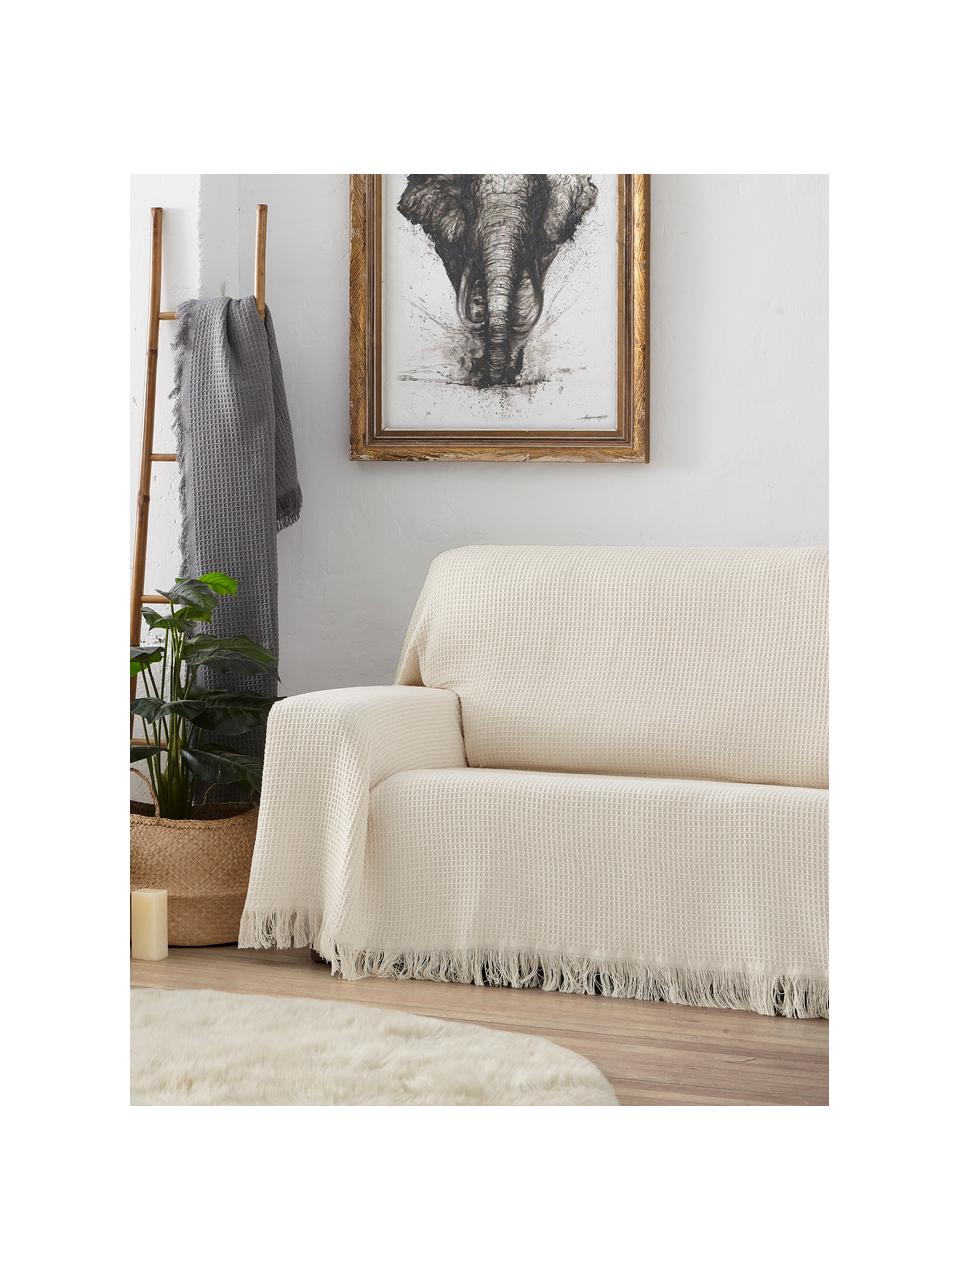 Wielofunkcyjna narzuta na sofę Amazons, 80% bawełna, 20% inne włókna, Szarozielony, S 180 x D 260 cm